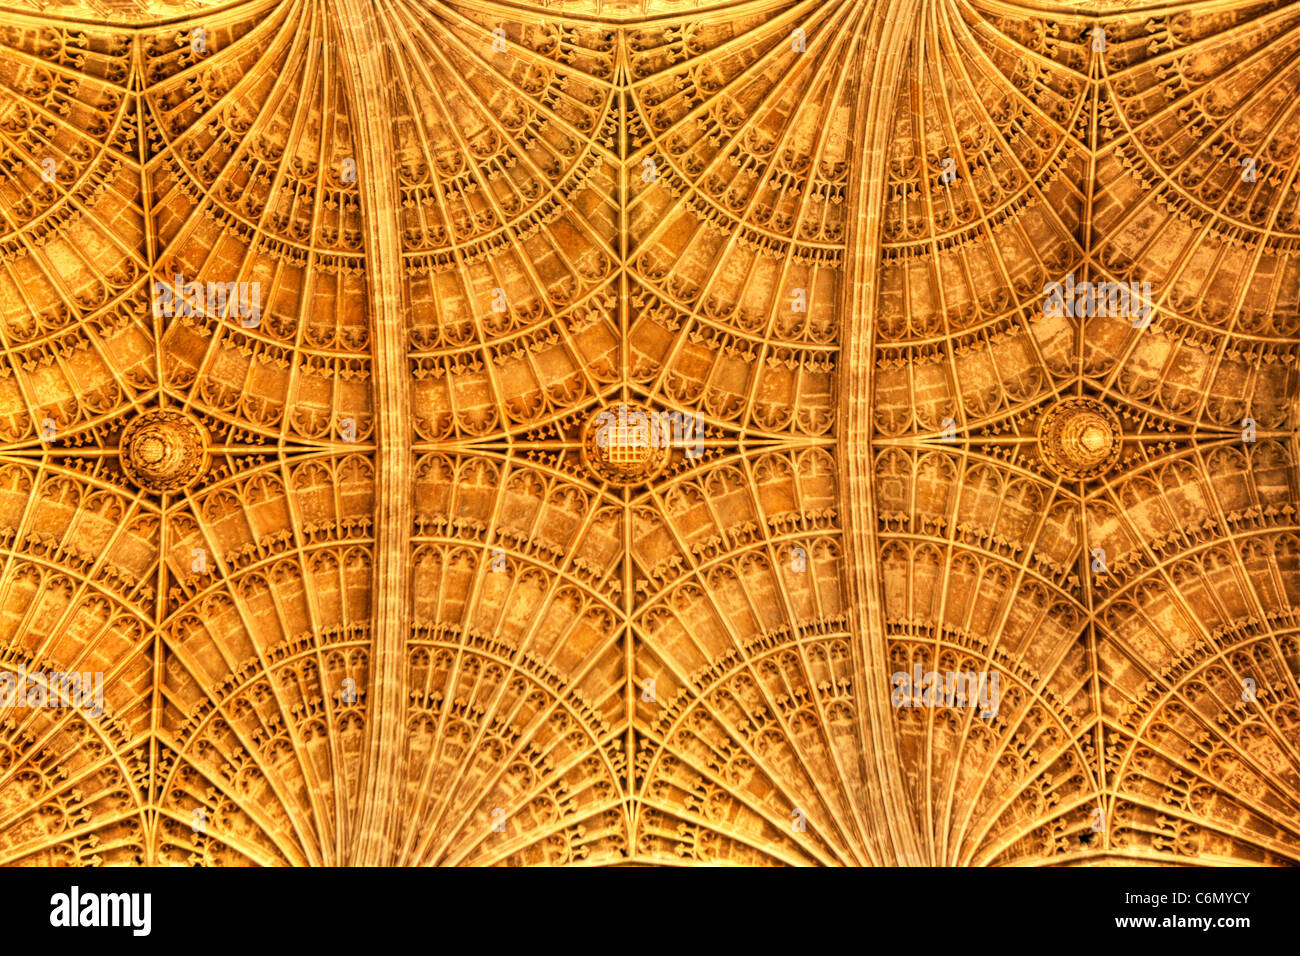 Close up Vue de dessous du ventilateur au plafond voûté au Kings College, Université de Cambridge Banque D'Images